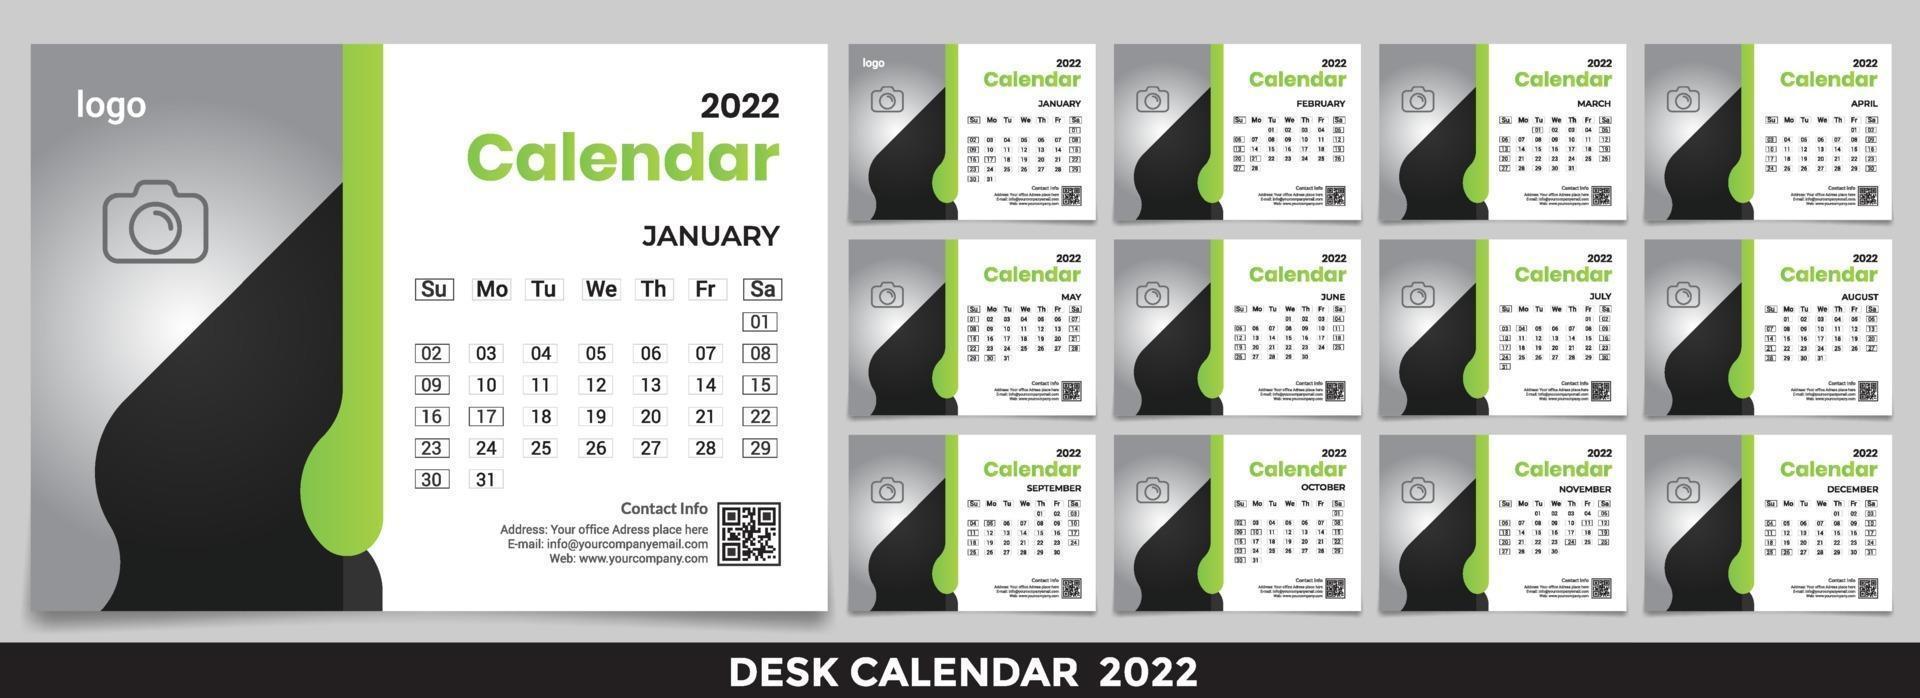 Kostenlose Tischkalender 2022 Vorlage Designidee, Kalender 2022, 2023 vektor